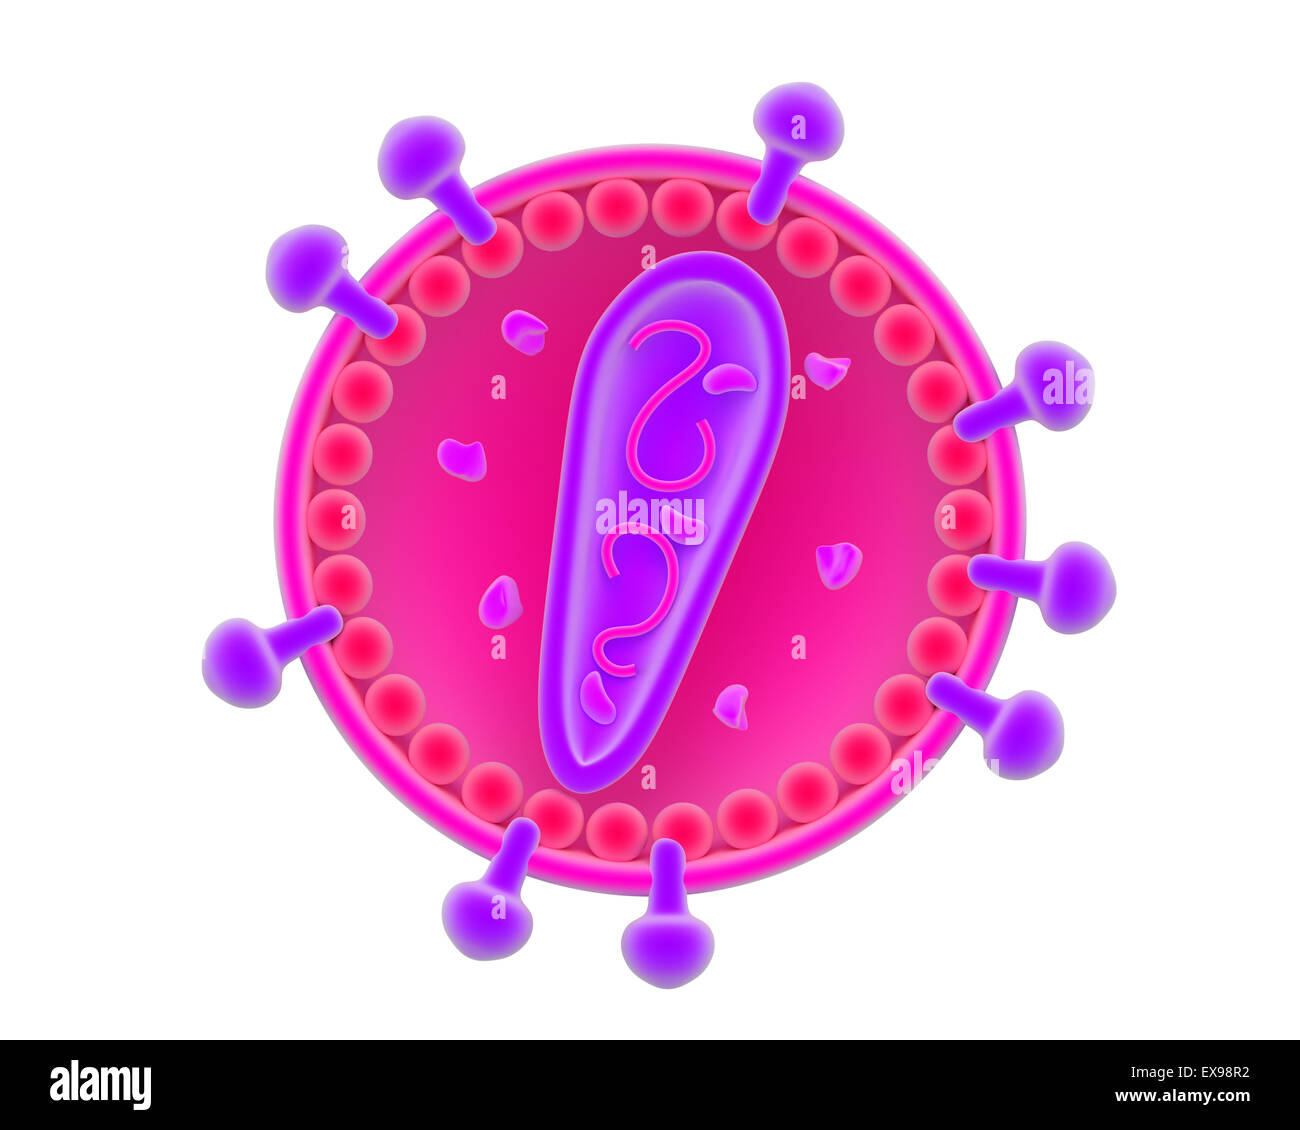 Illustrazione di un retrovirus virione. Foto Stock